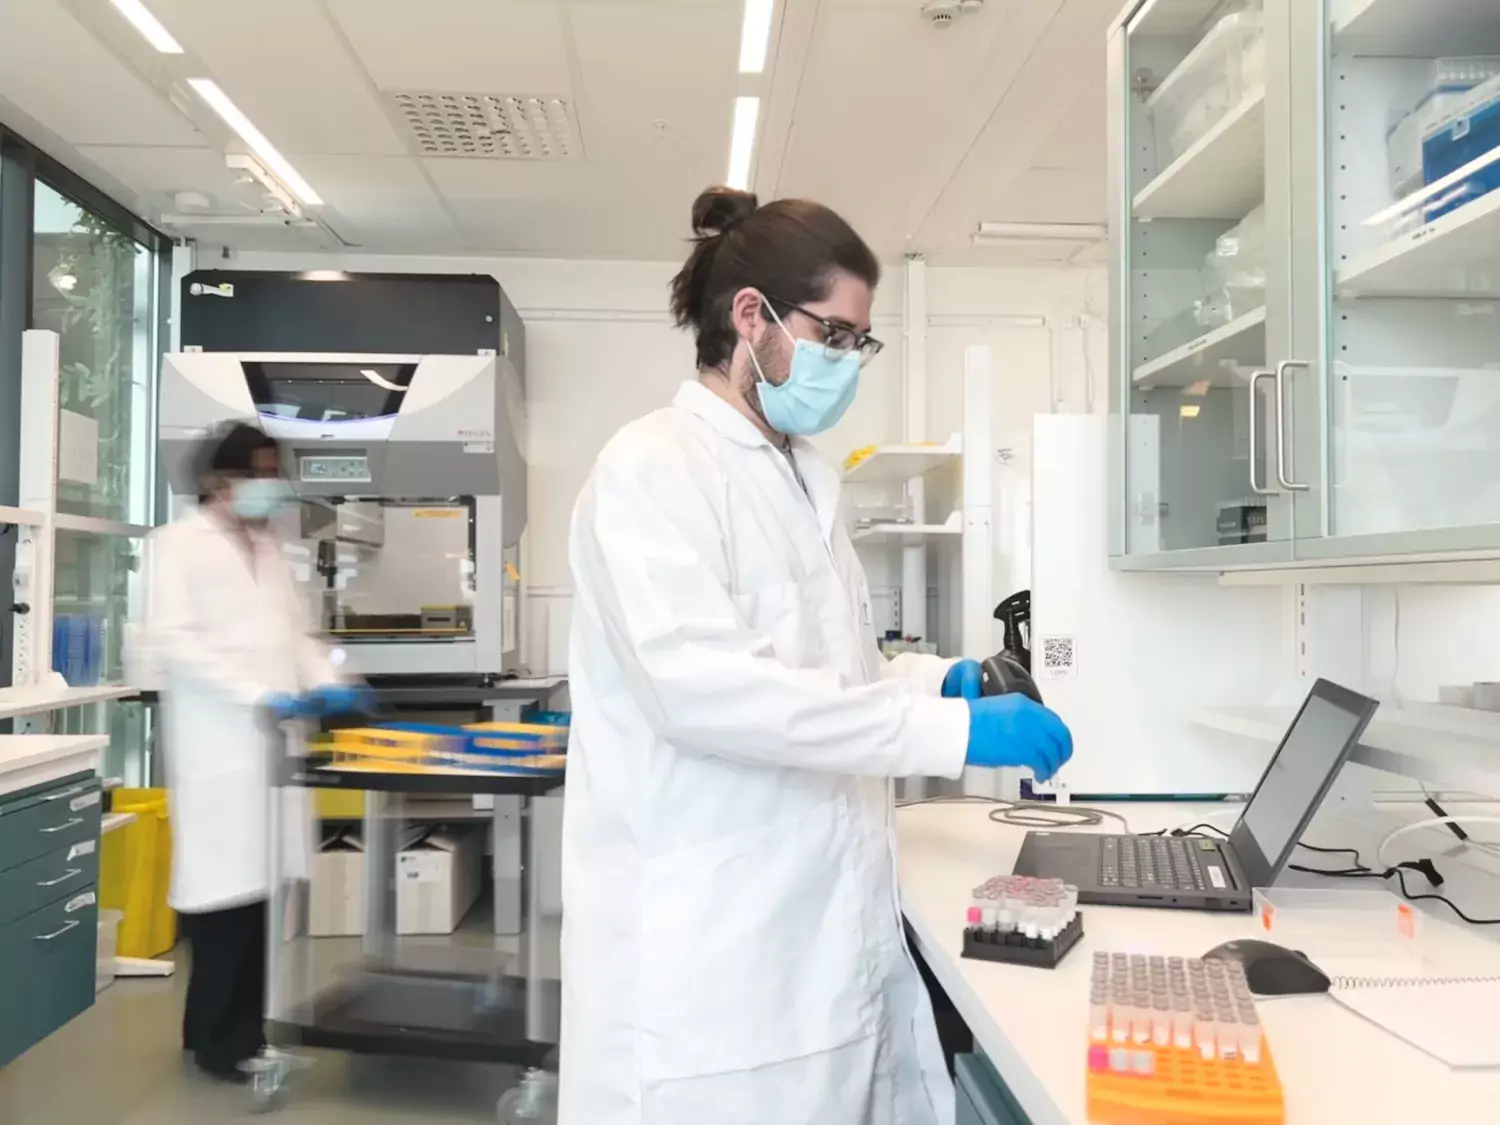 Två personer i vita labbrockar står i ett labboratorium. Den ene scannar ett provrör